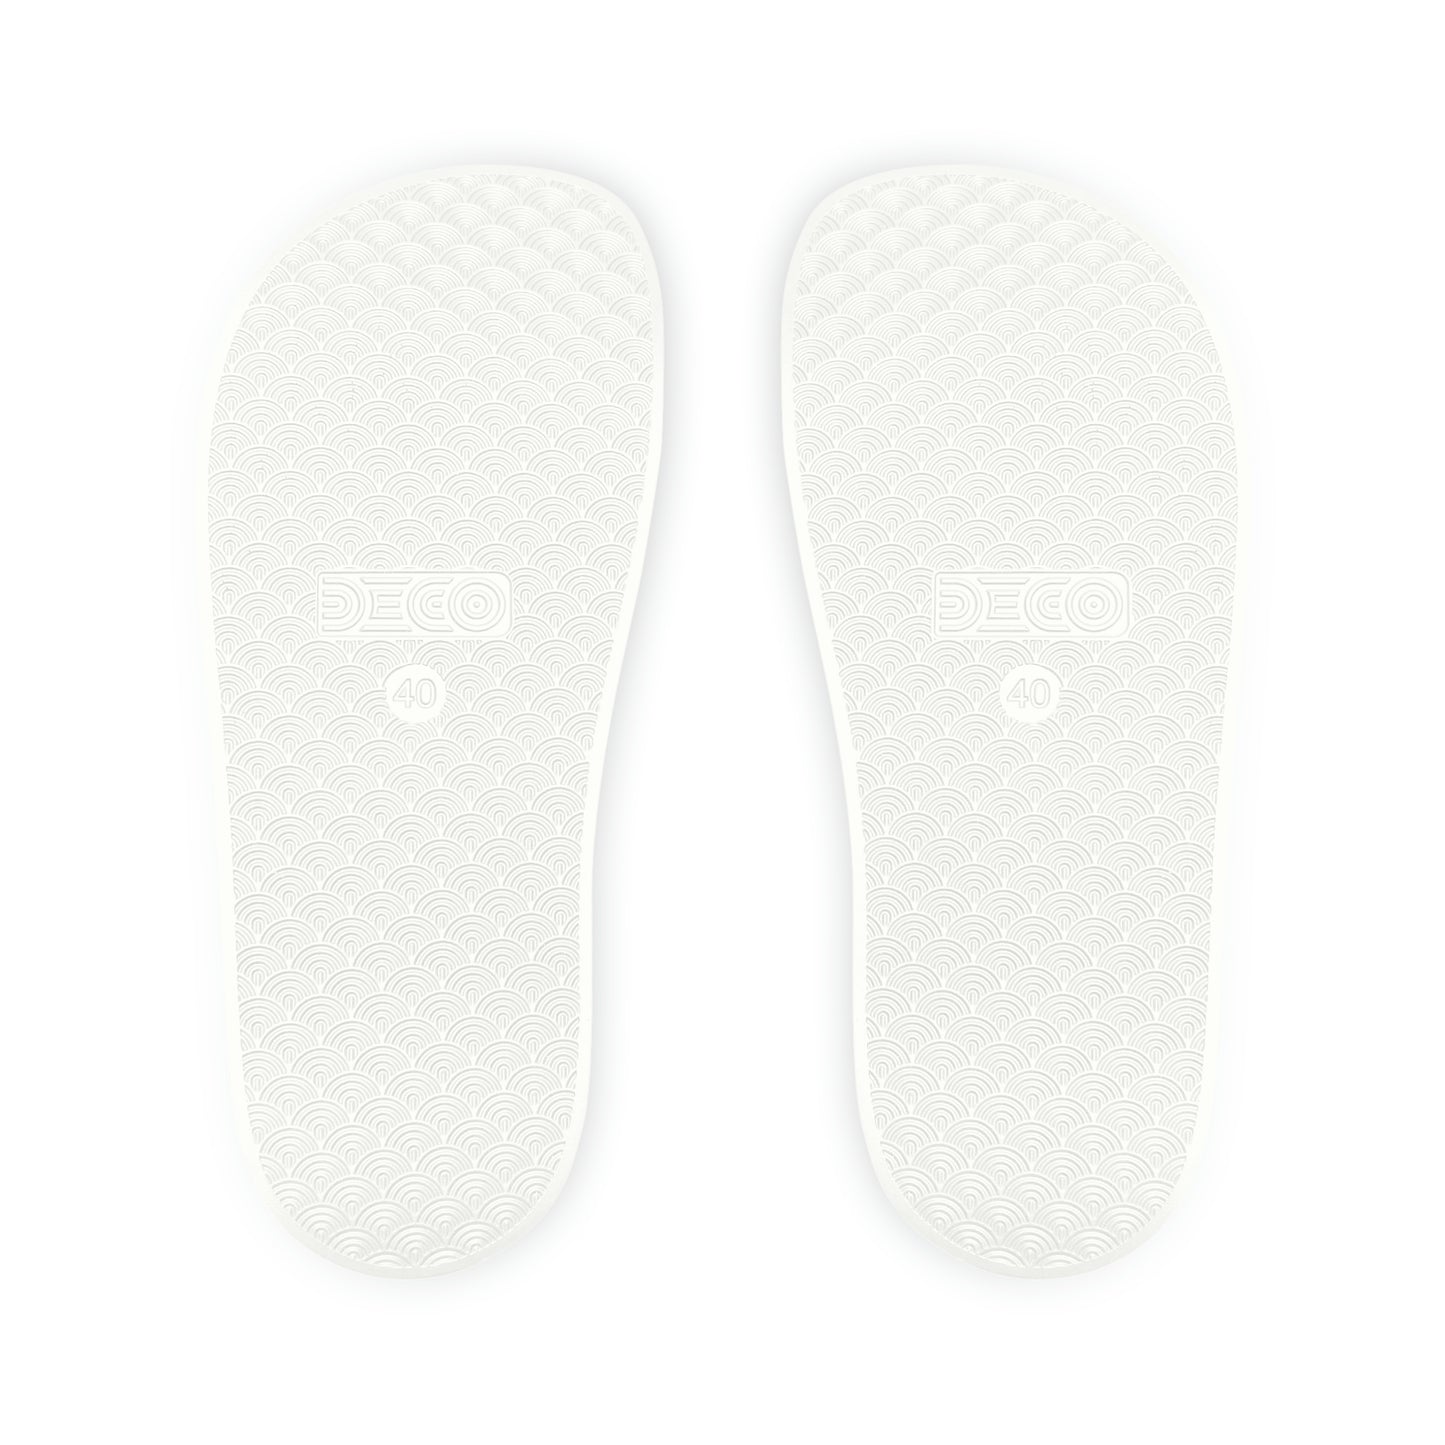 Fromth33rd Men's Slide Sandals